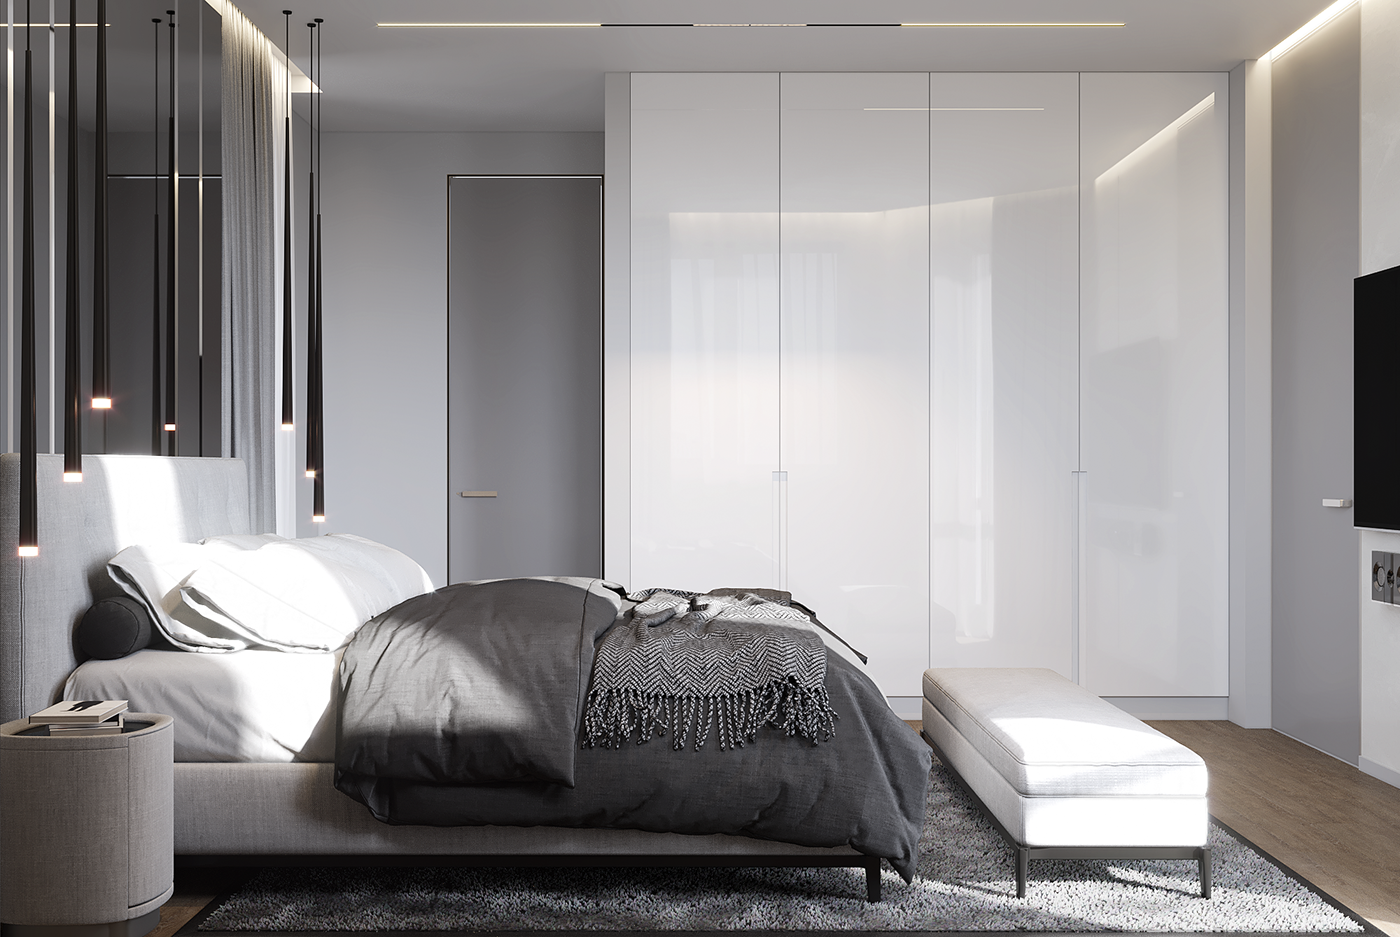 интерьер визуализация дизайн спальня Interior design 3D Vizualization